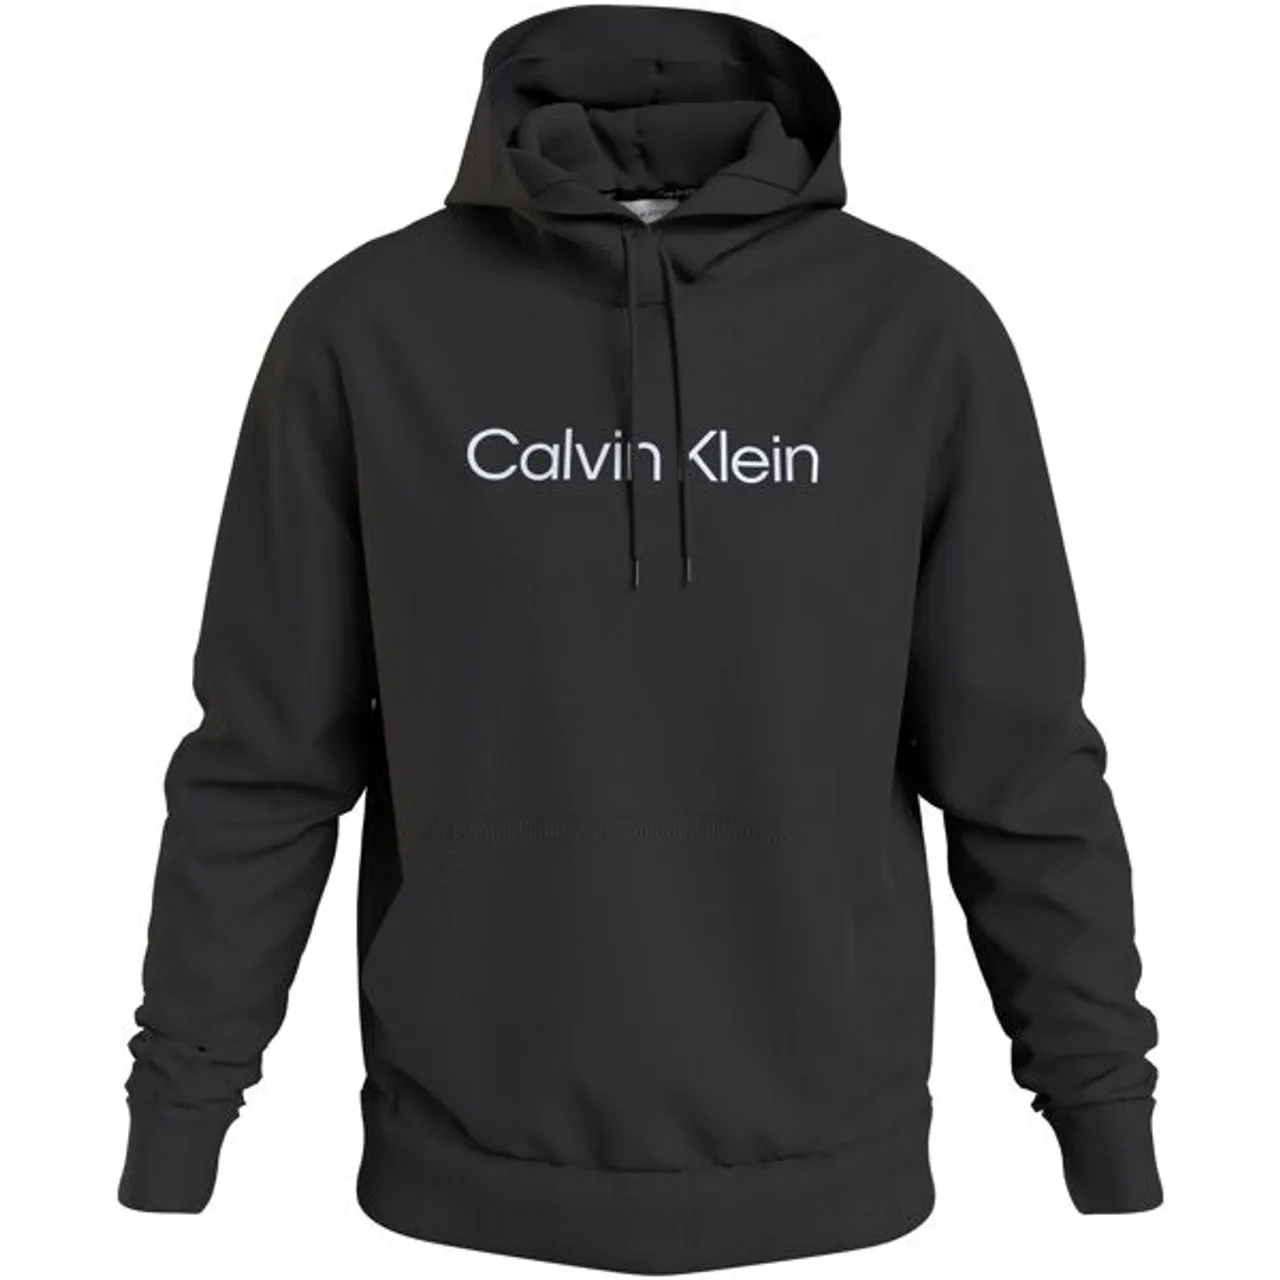 Kapuzensweatshirt CALVIN KLEIN BIG&TALL "BT_HERO LOGO COMFORT HOODIE" Gr. XXXL, schwarz (ck black) Herren Sweatshirts in großen Größen mit Markenlabel